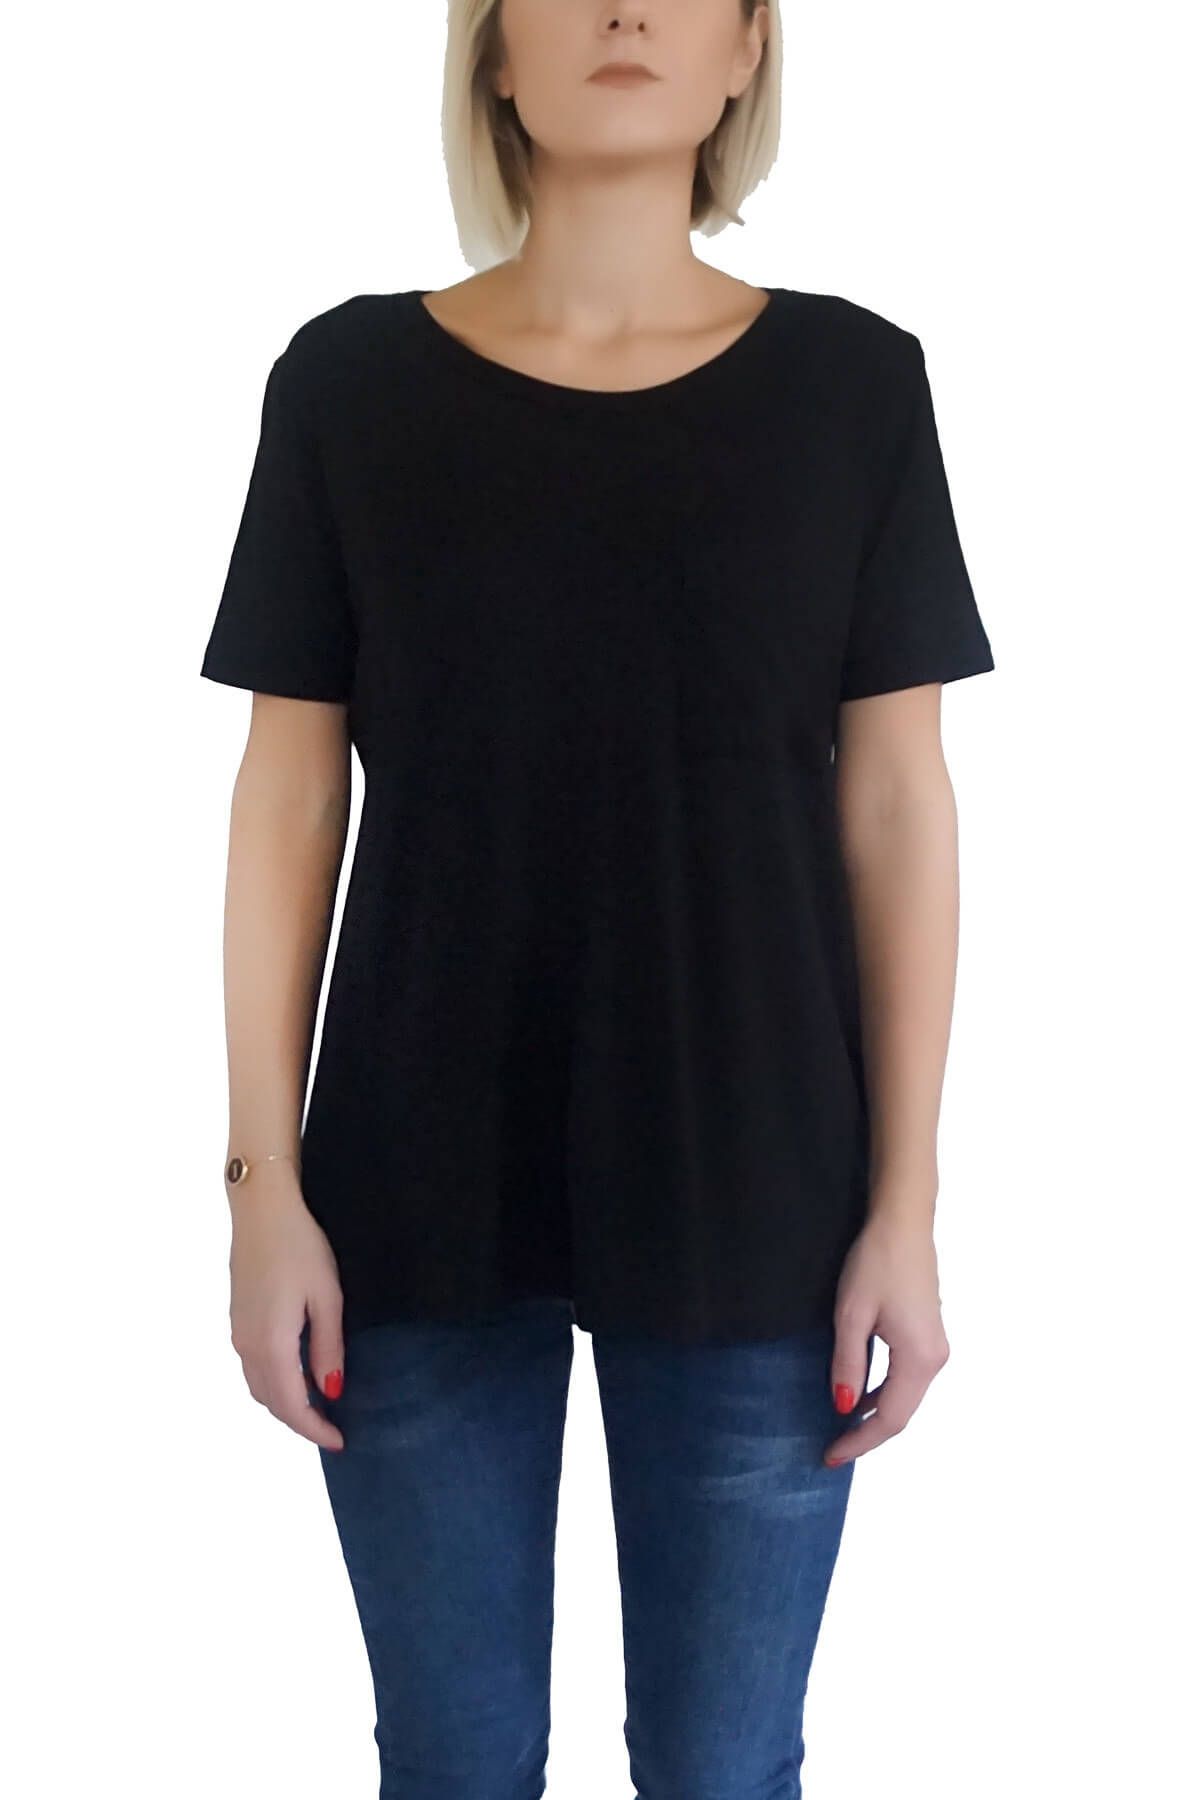 Mof Basics Kadın Siyah T-Shirt SYCT-S